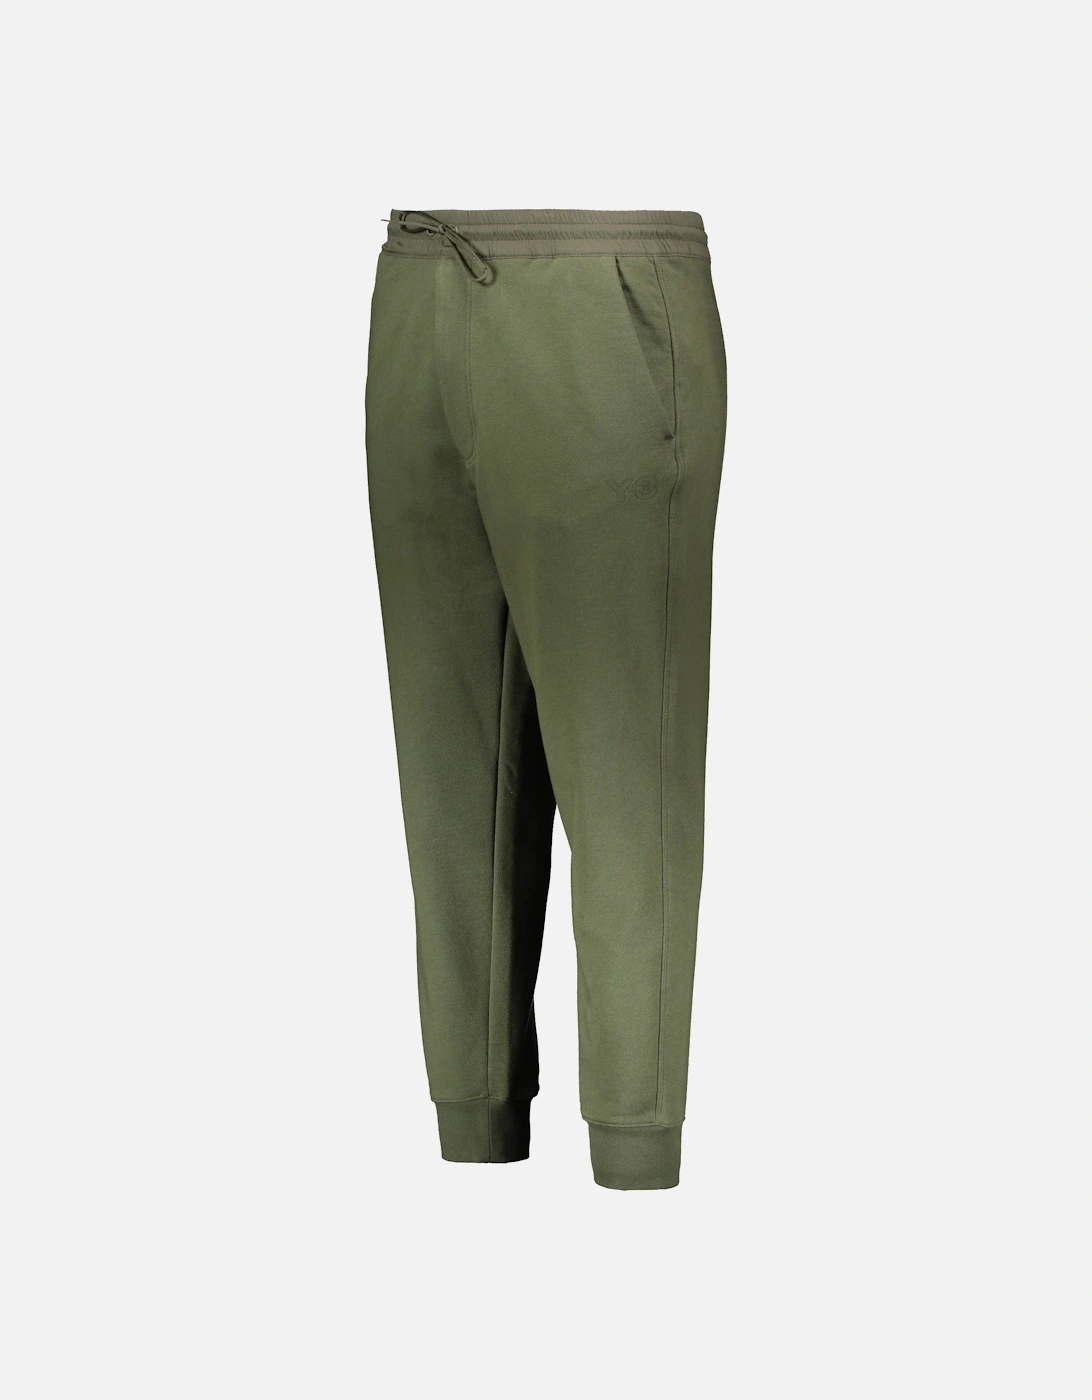 Y3 Cuffed Pants - Nectar Dark Green